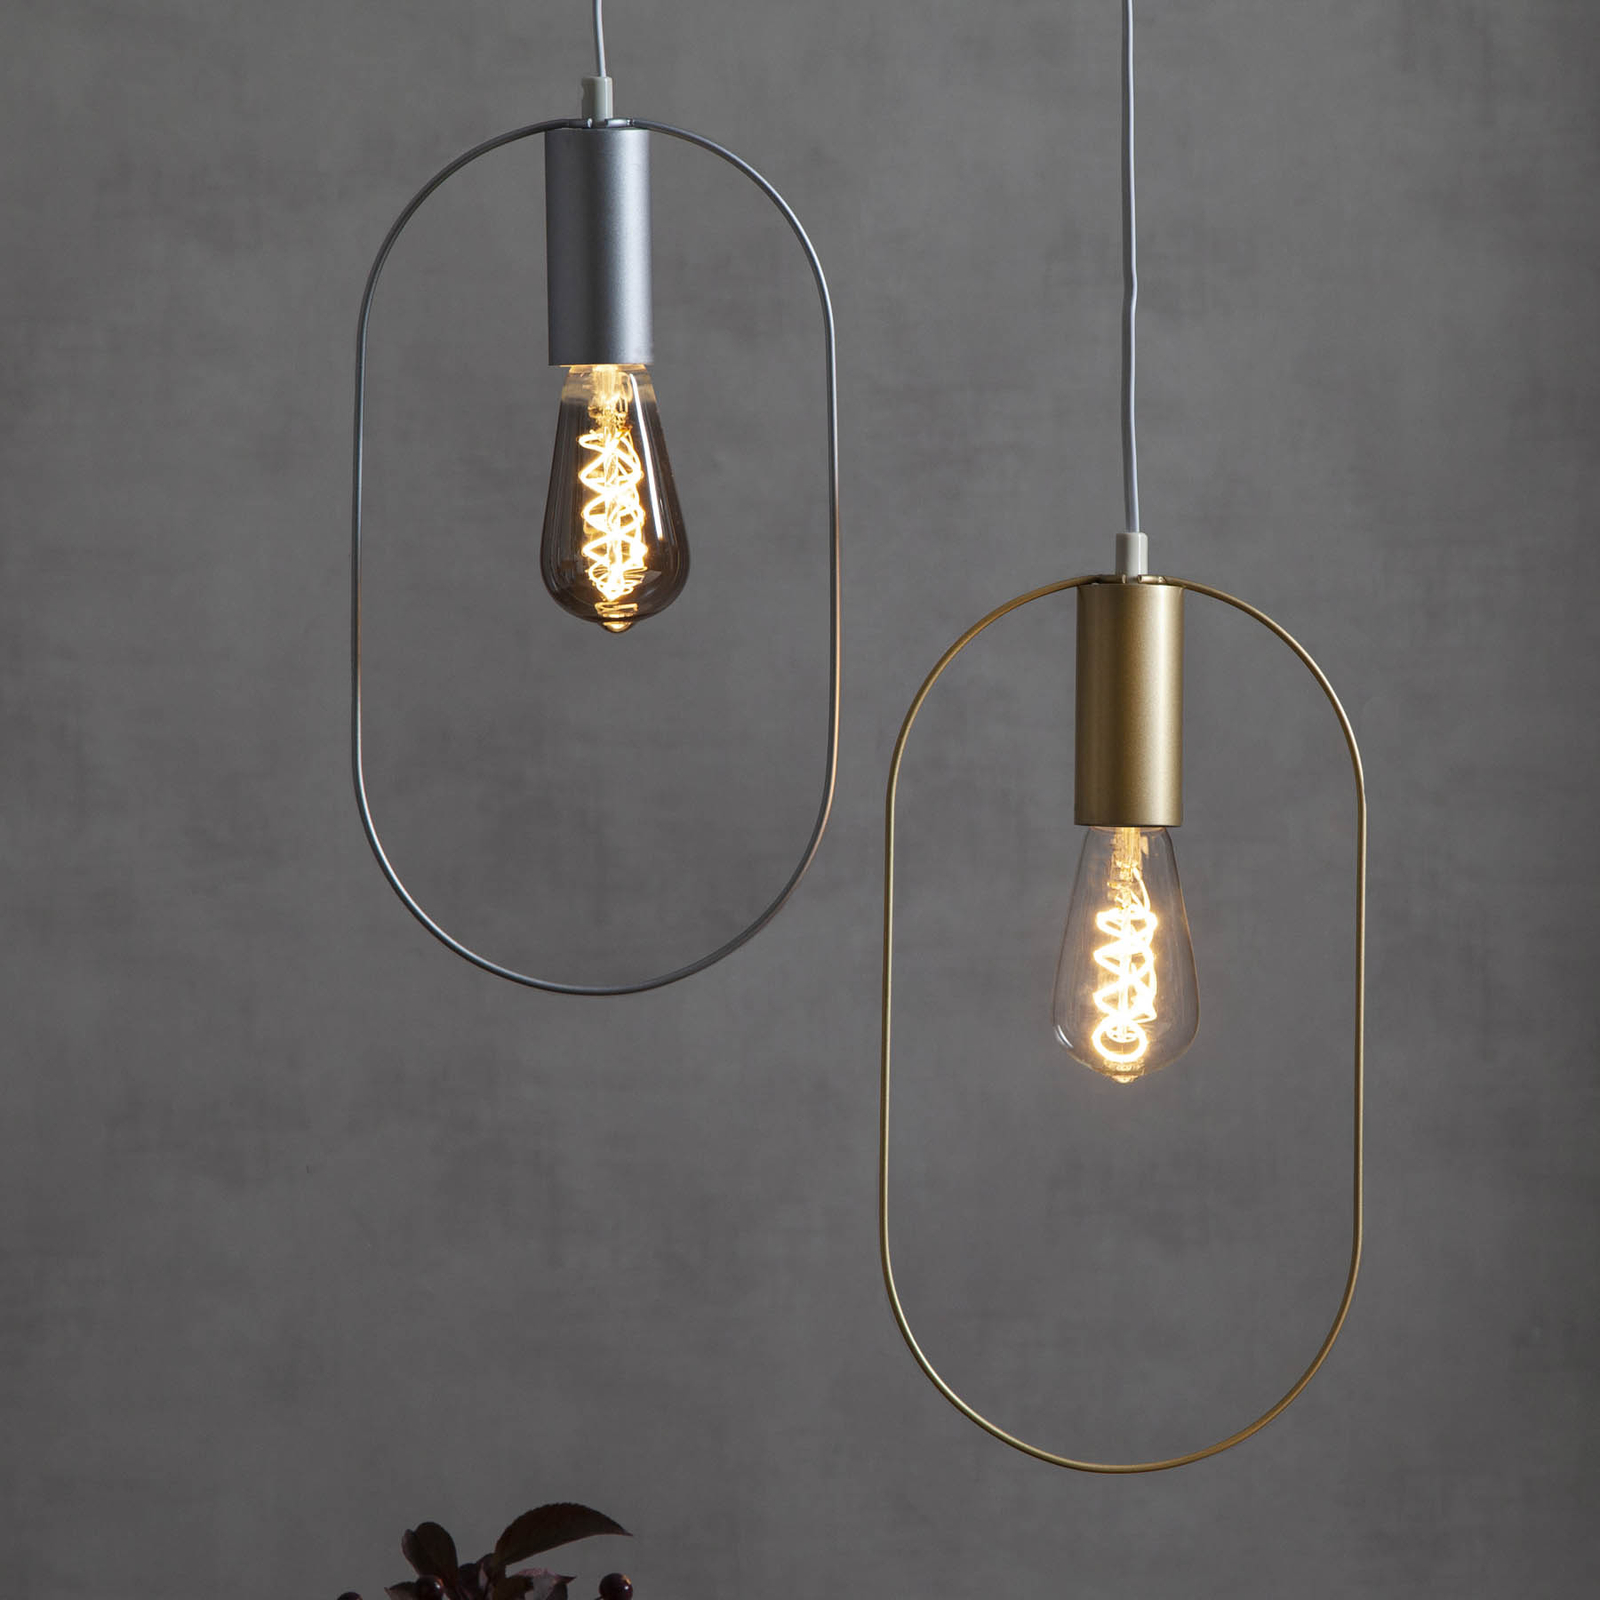 Decoratie-hanglamp Shape met ovaal, zilver